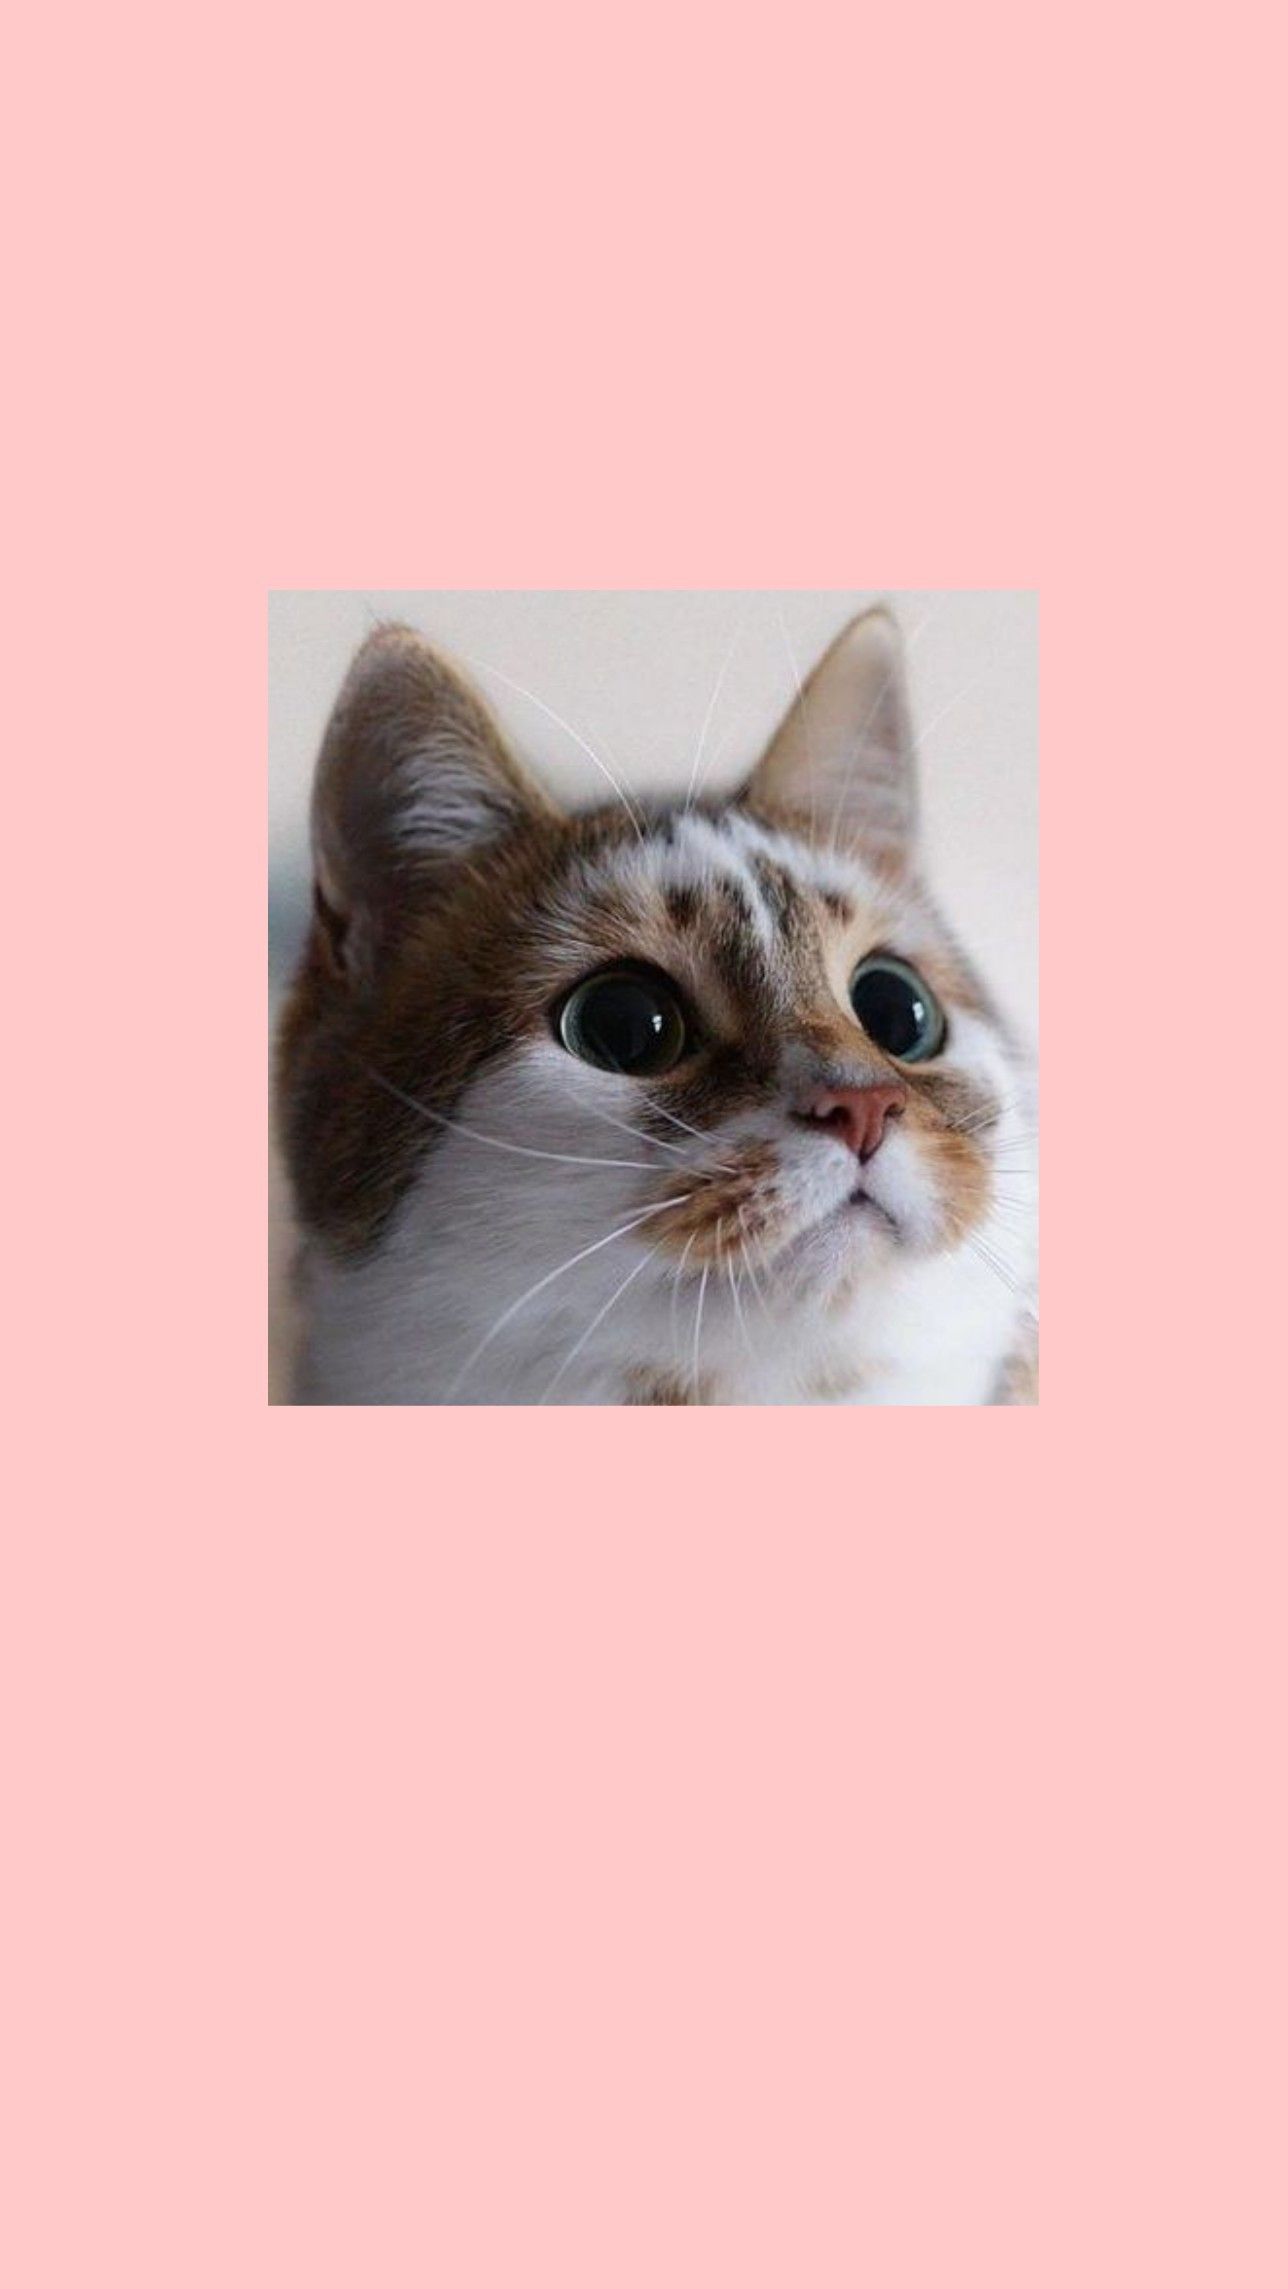  Katzen Hintergrundbild 1288x2289. Shane Mae on Aesthetic wallpaper. Funny cat wallpaper, Cute cat memes, Cute cat wallpaper